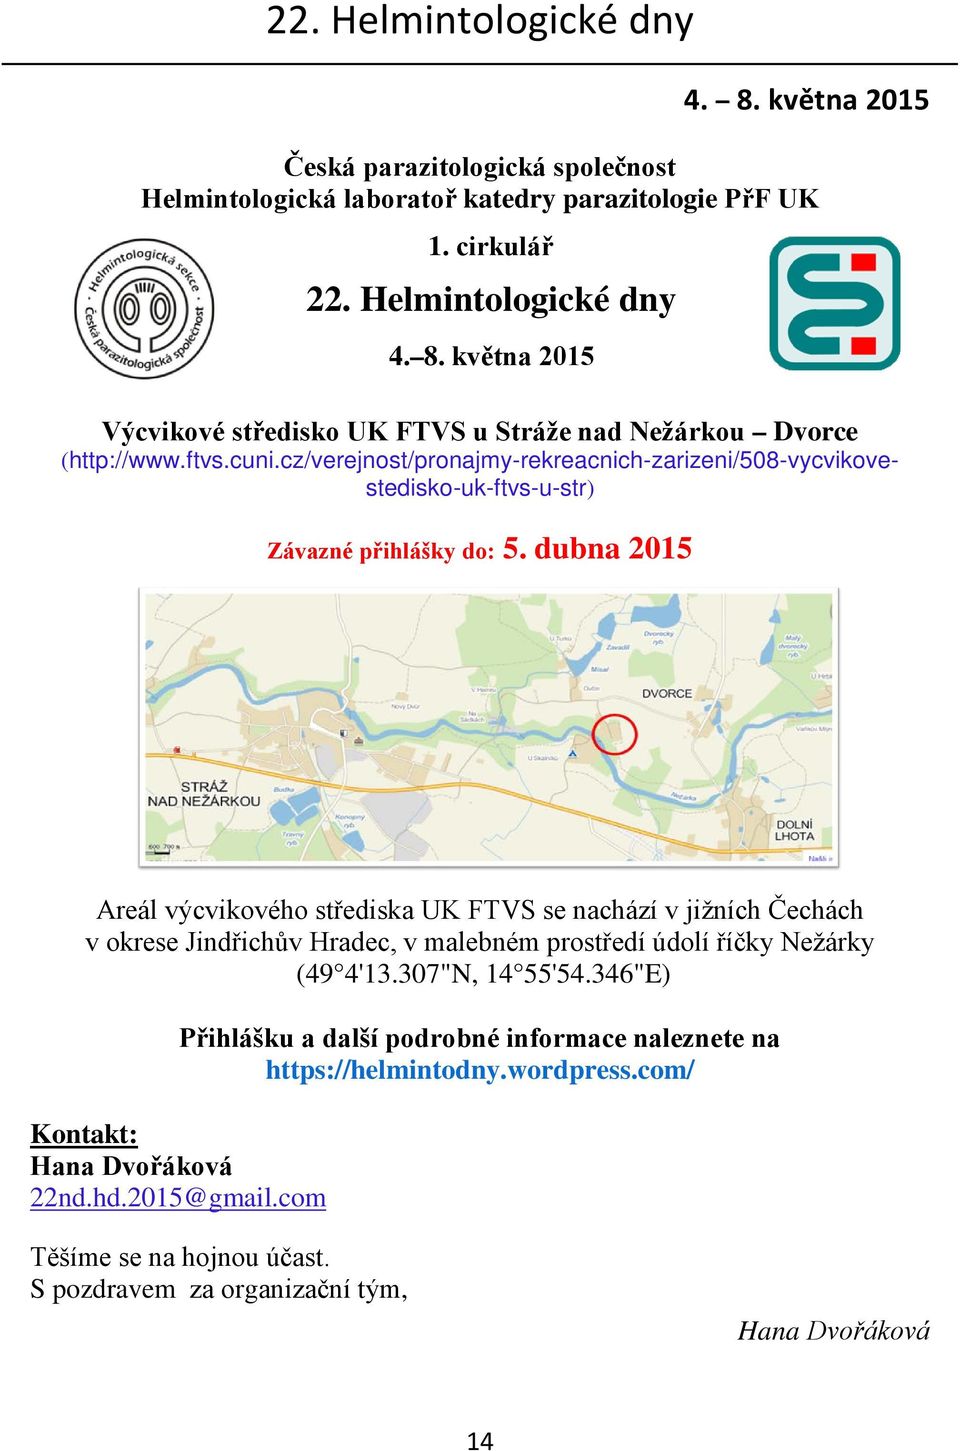 dubna 2015 Areál výcvikového střediska UK FTVS se nachází v jižních Čechách v okrese Jindřichův Hradec, v malebném prostředí údolí říčky Nežárky (49 4'13.307"N, 14 55'54.